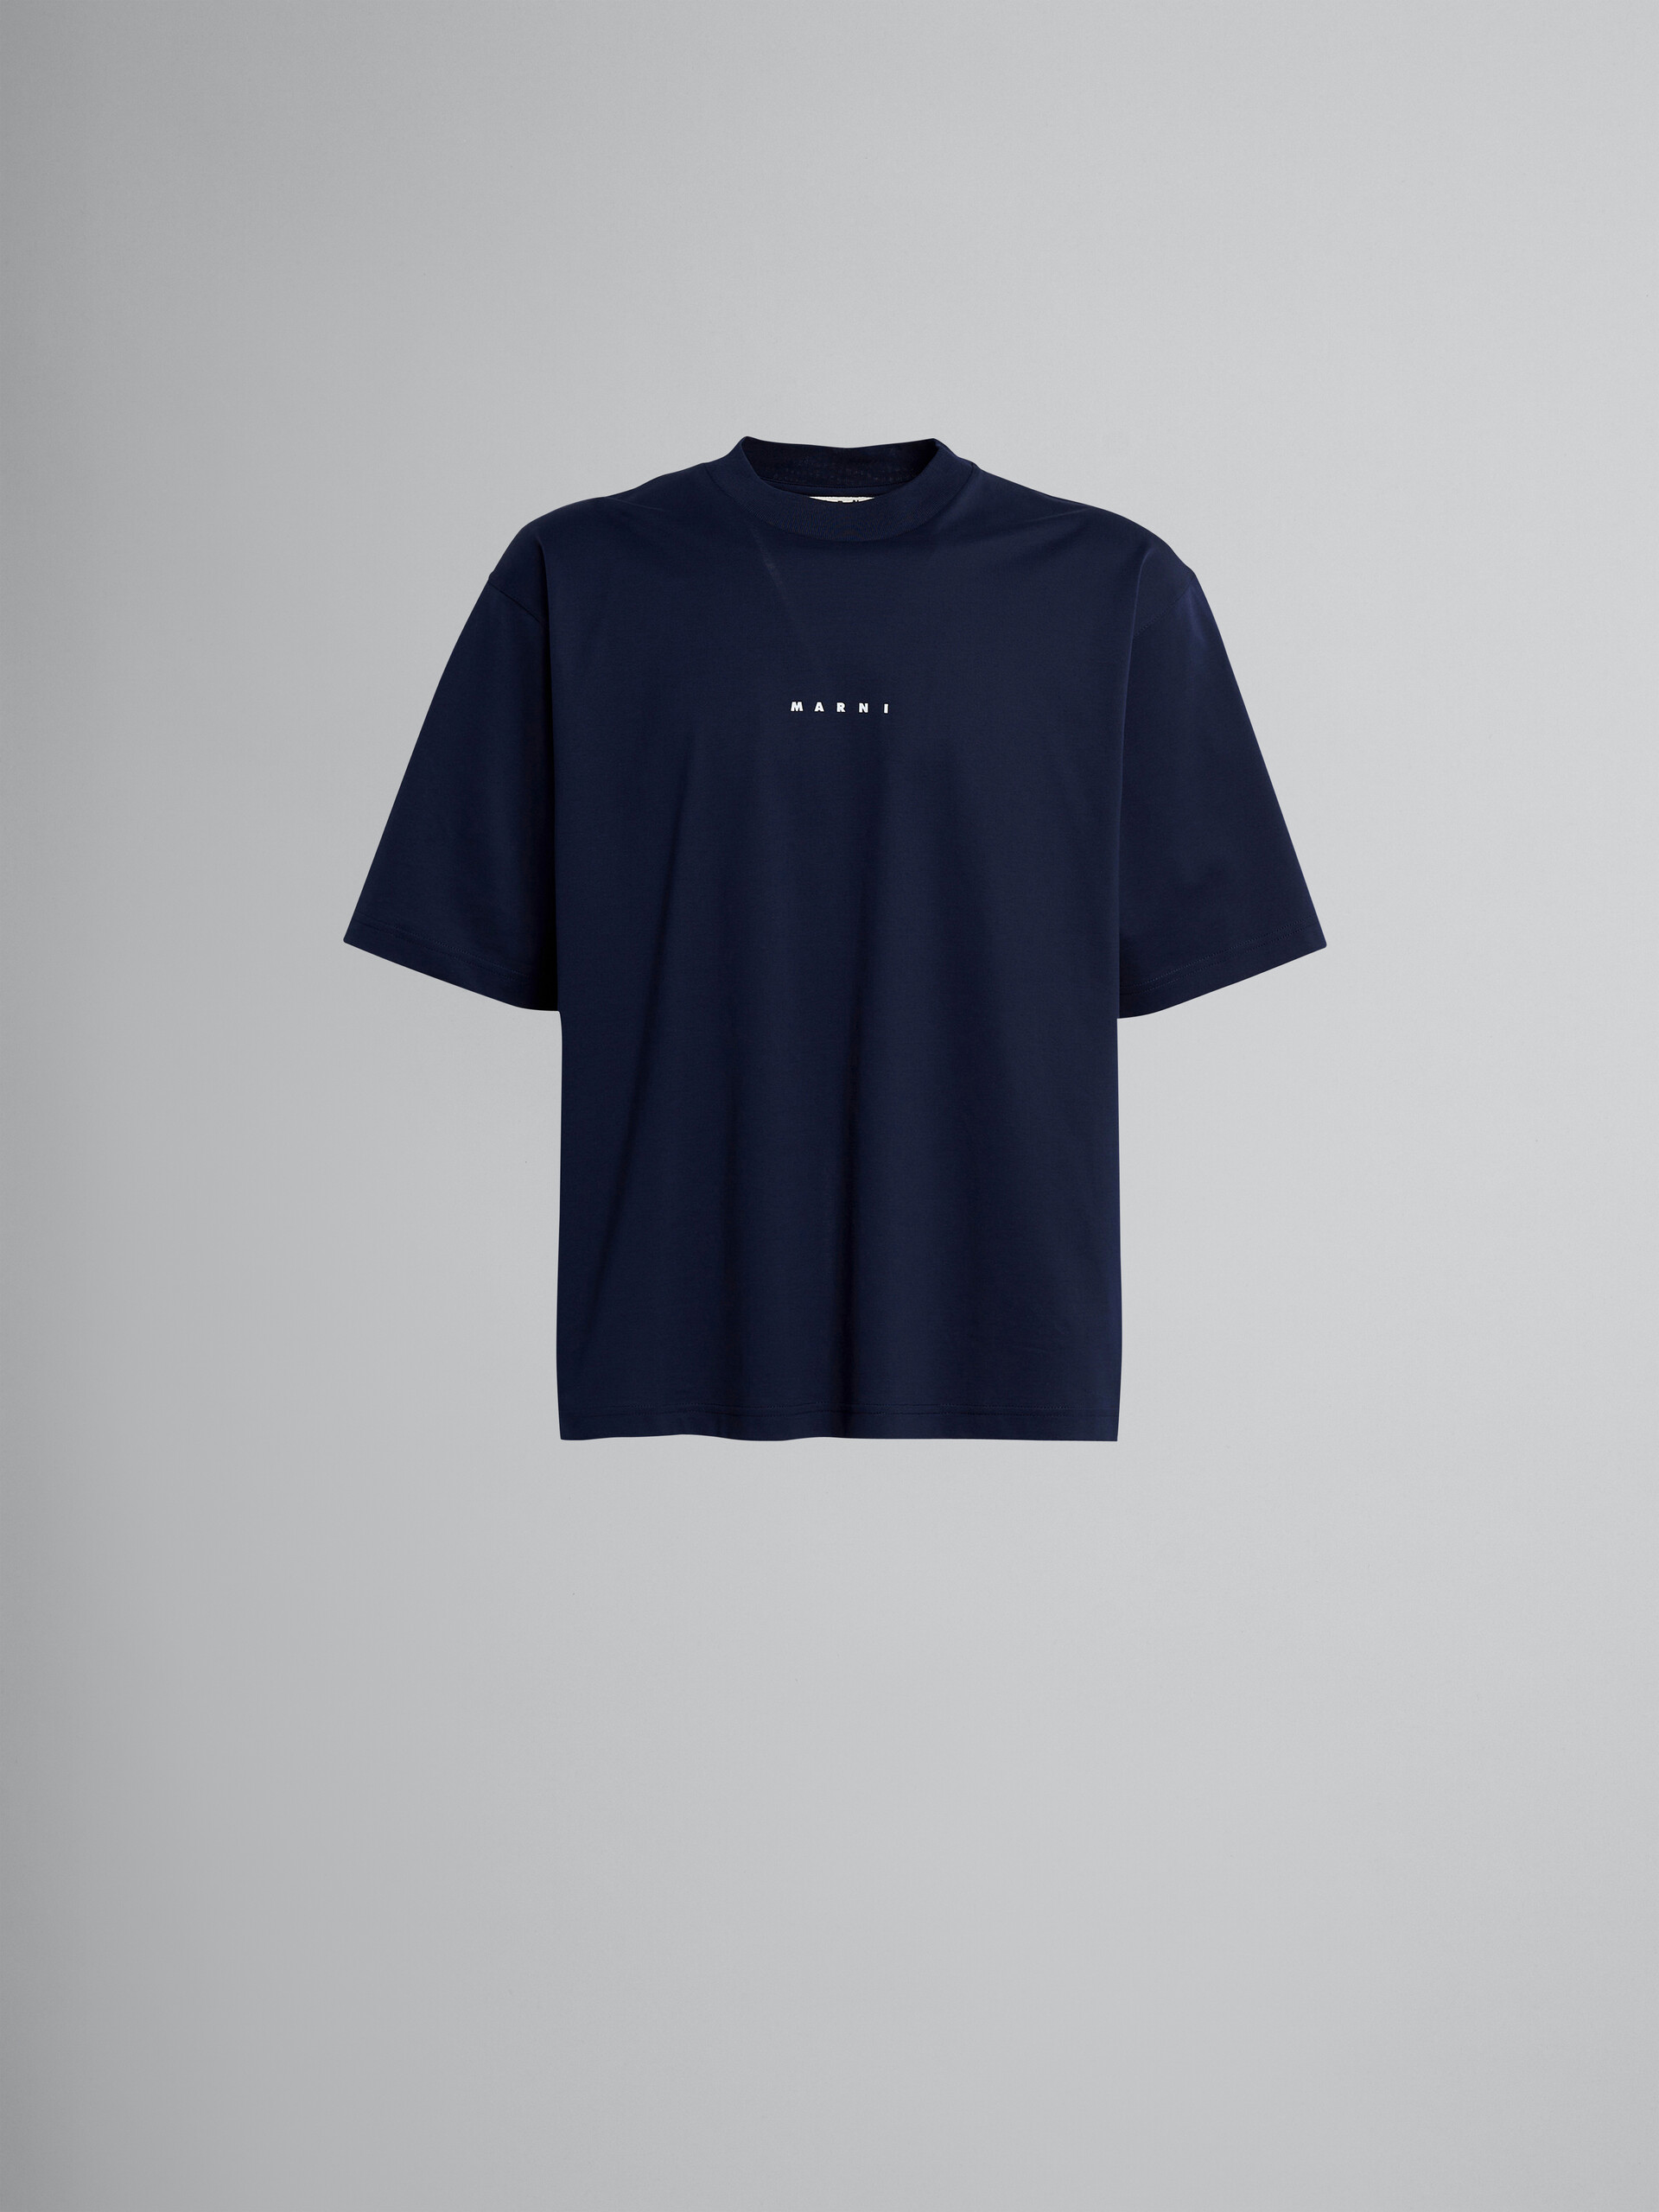 ブラックロゴ入りTシャツ - Tシャツ - Image 1